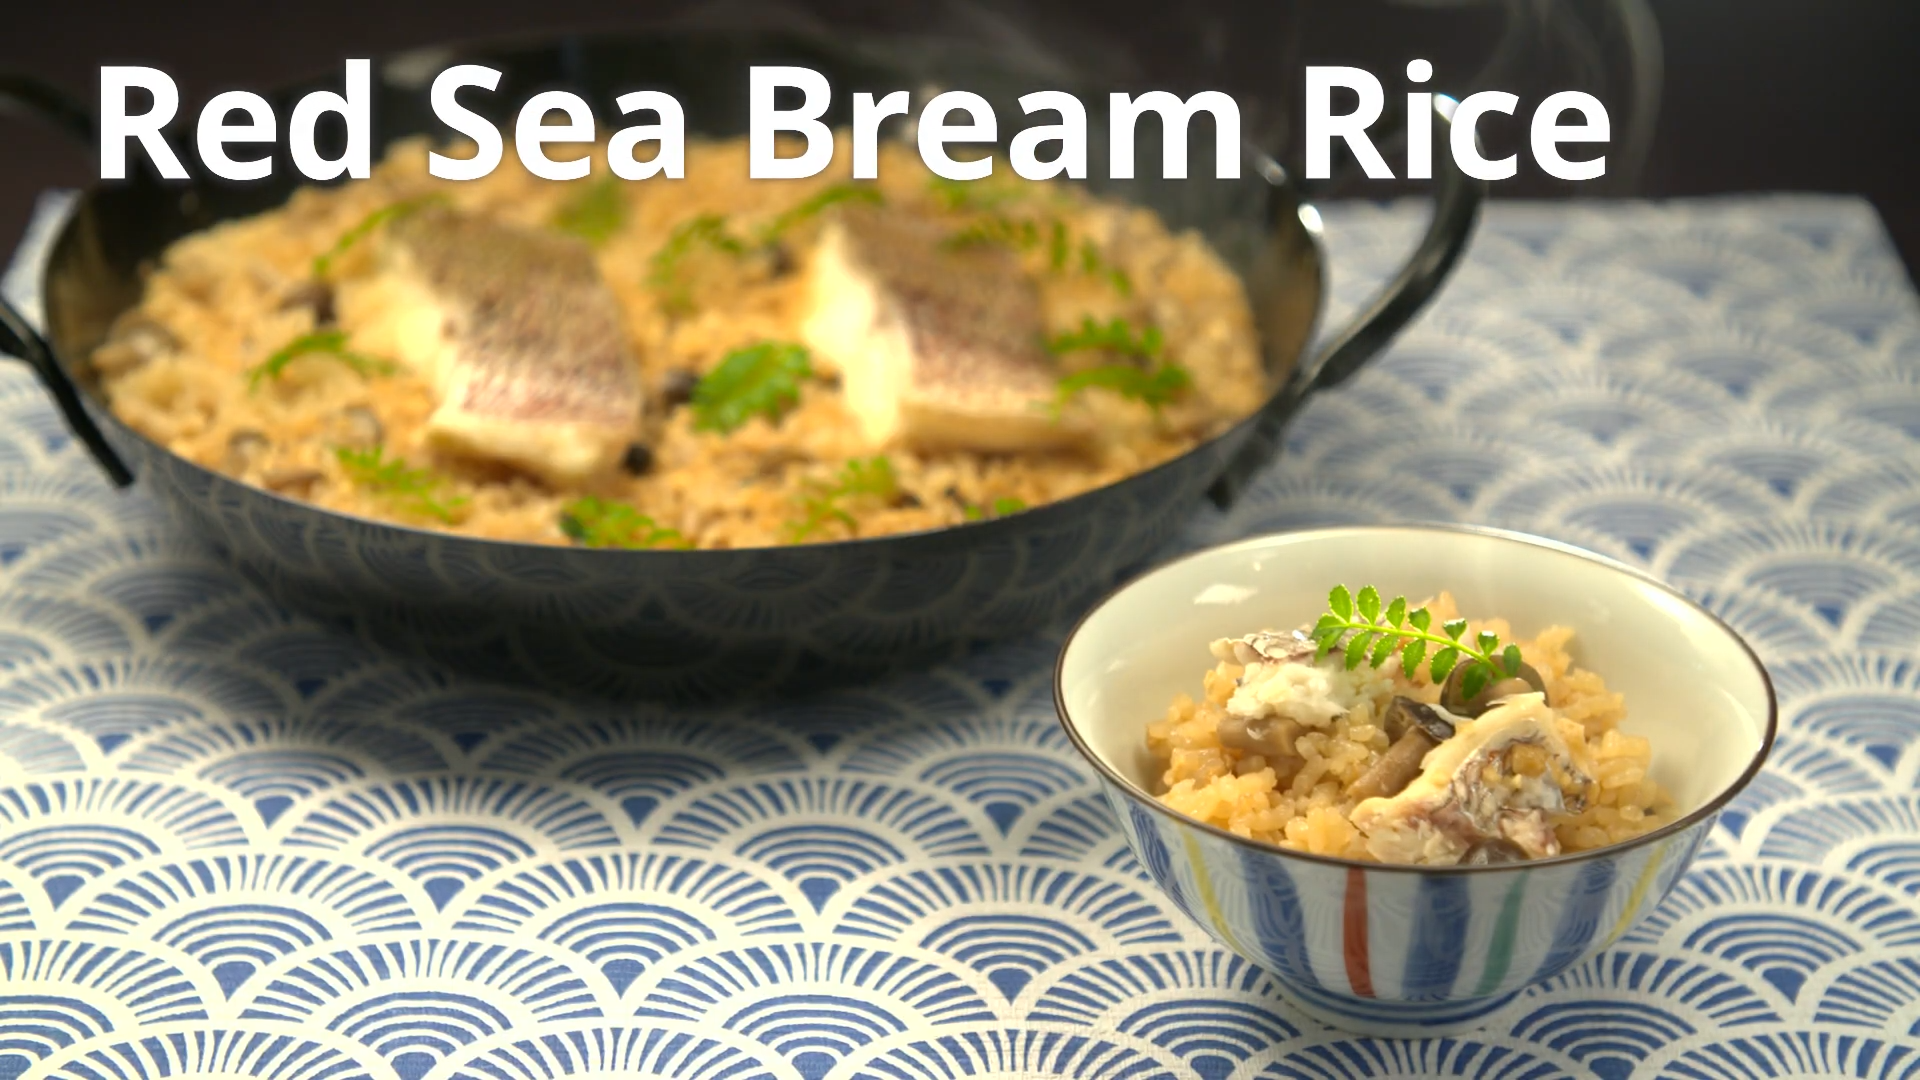 Red Sea Bream Rice